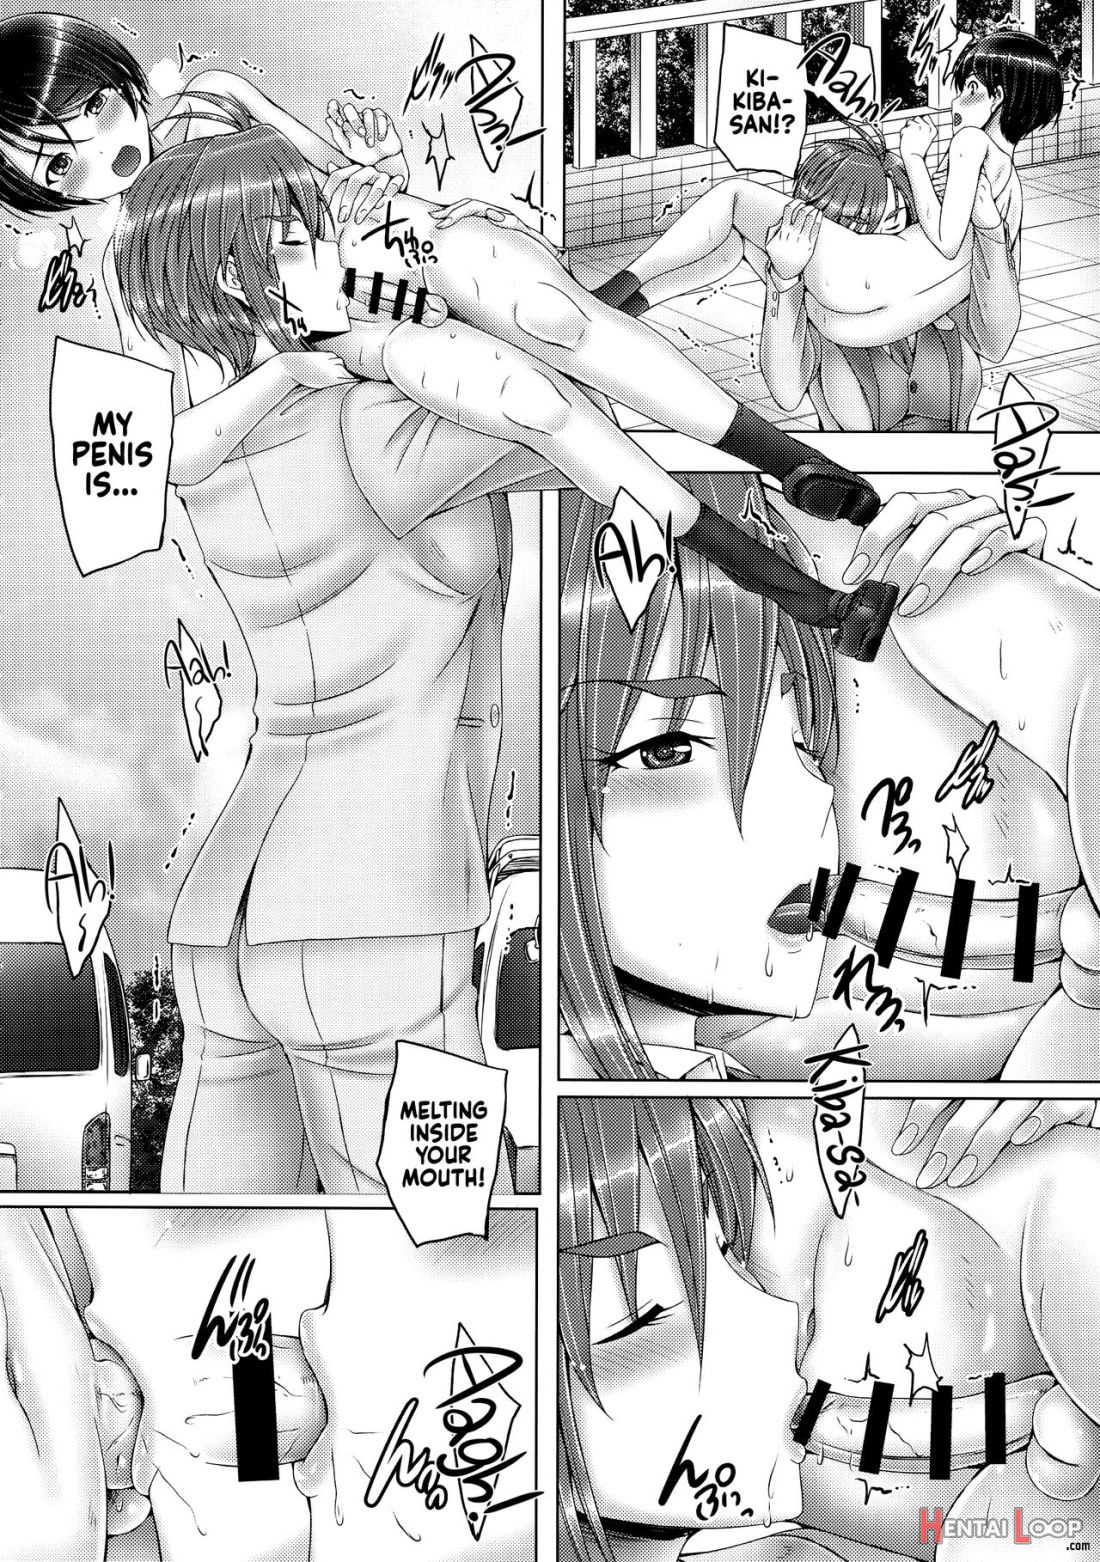 Kiba-san To Shota-p 2 page 7